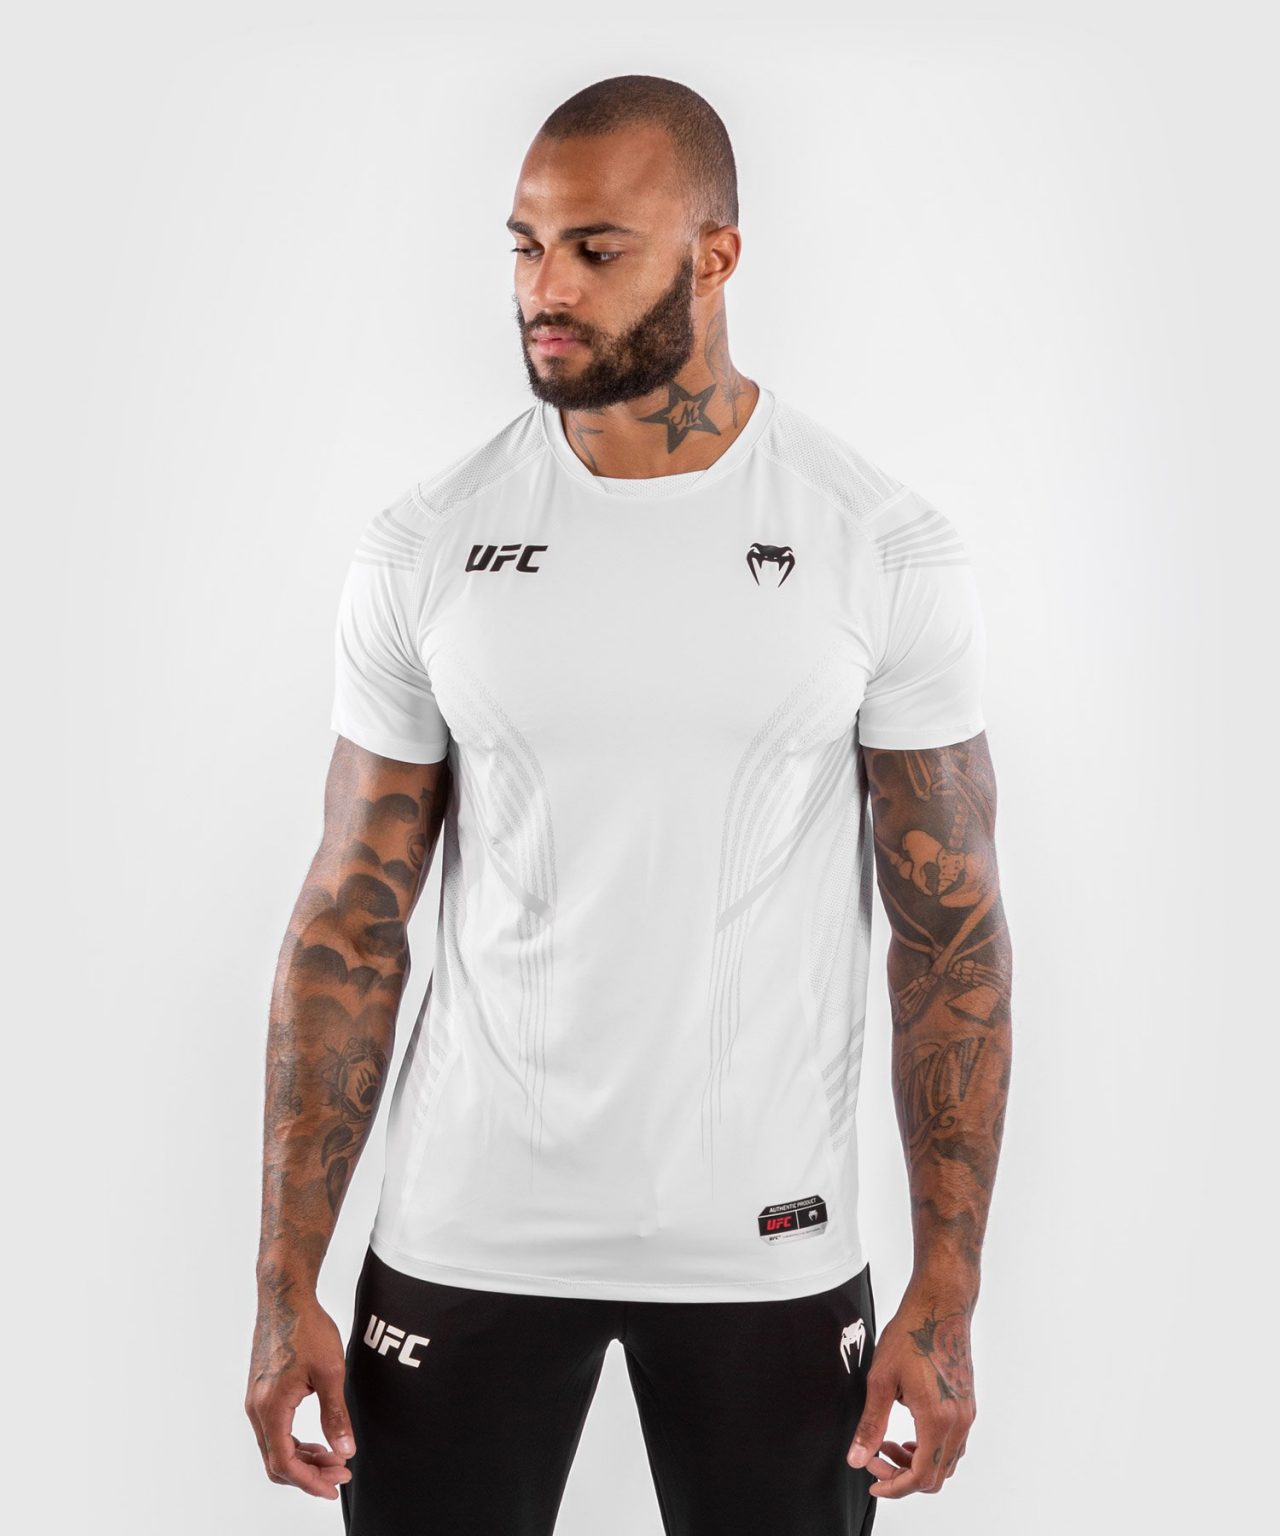 Venum UFC Fight Kit Walkout Jersey Shirts